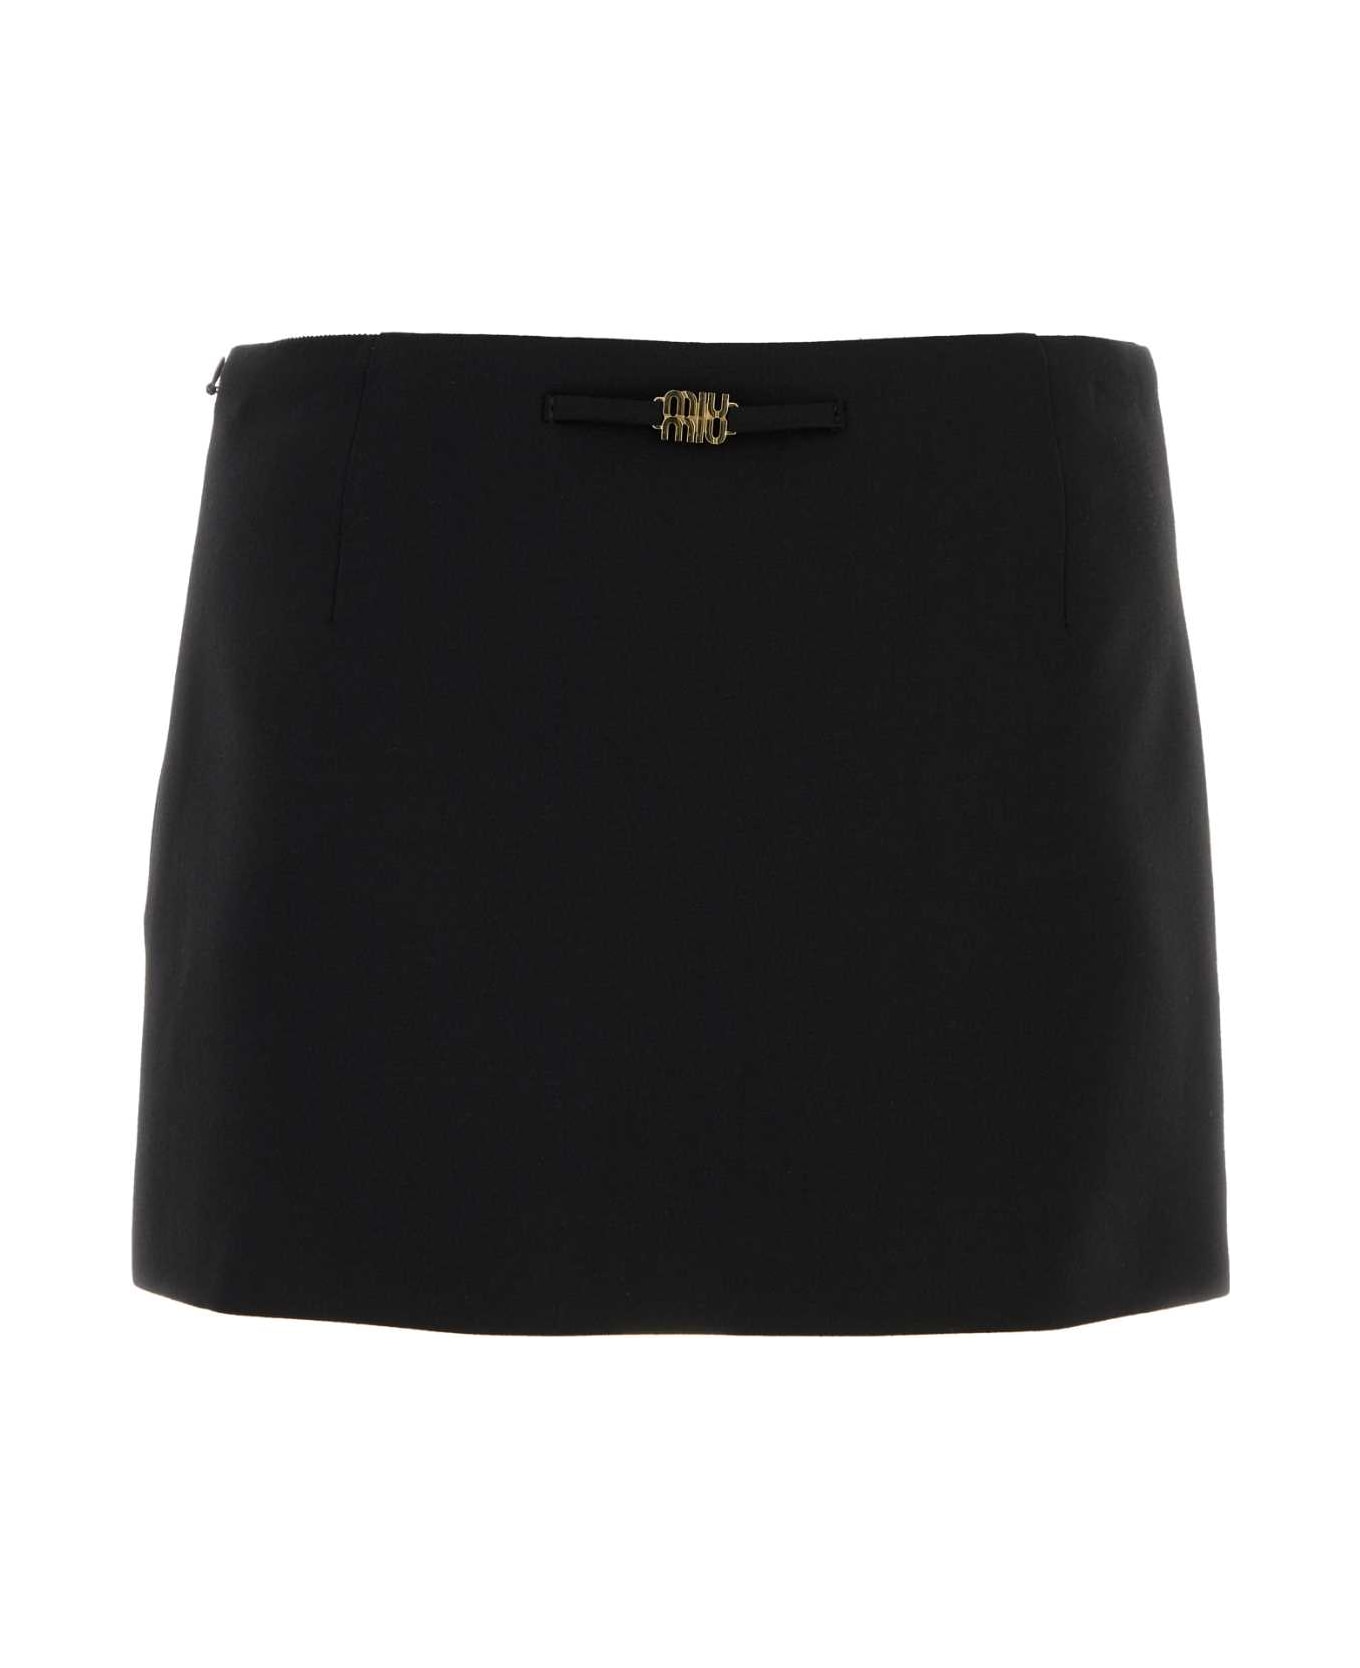 Miu Miu Black Stretch Wool Mini Skirt - NERO